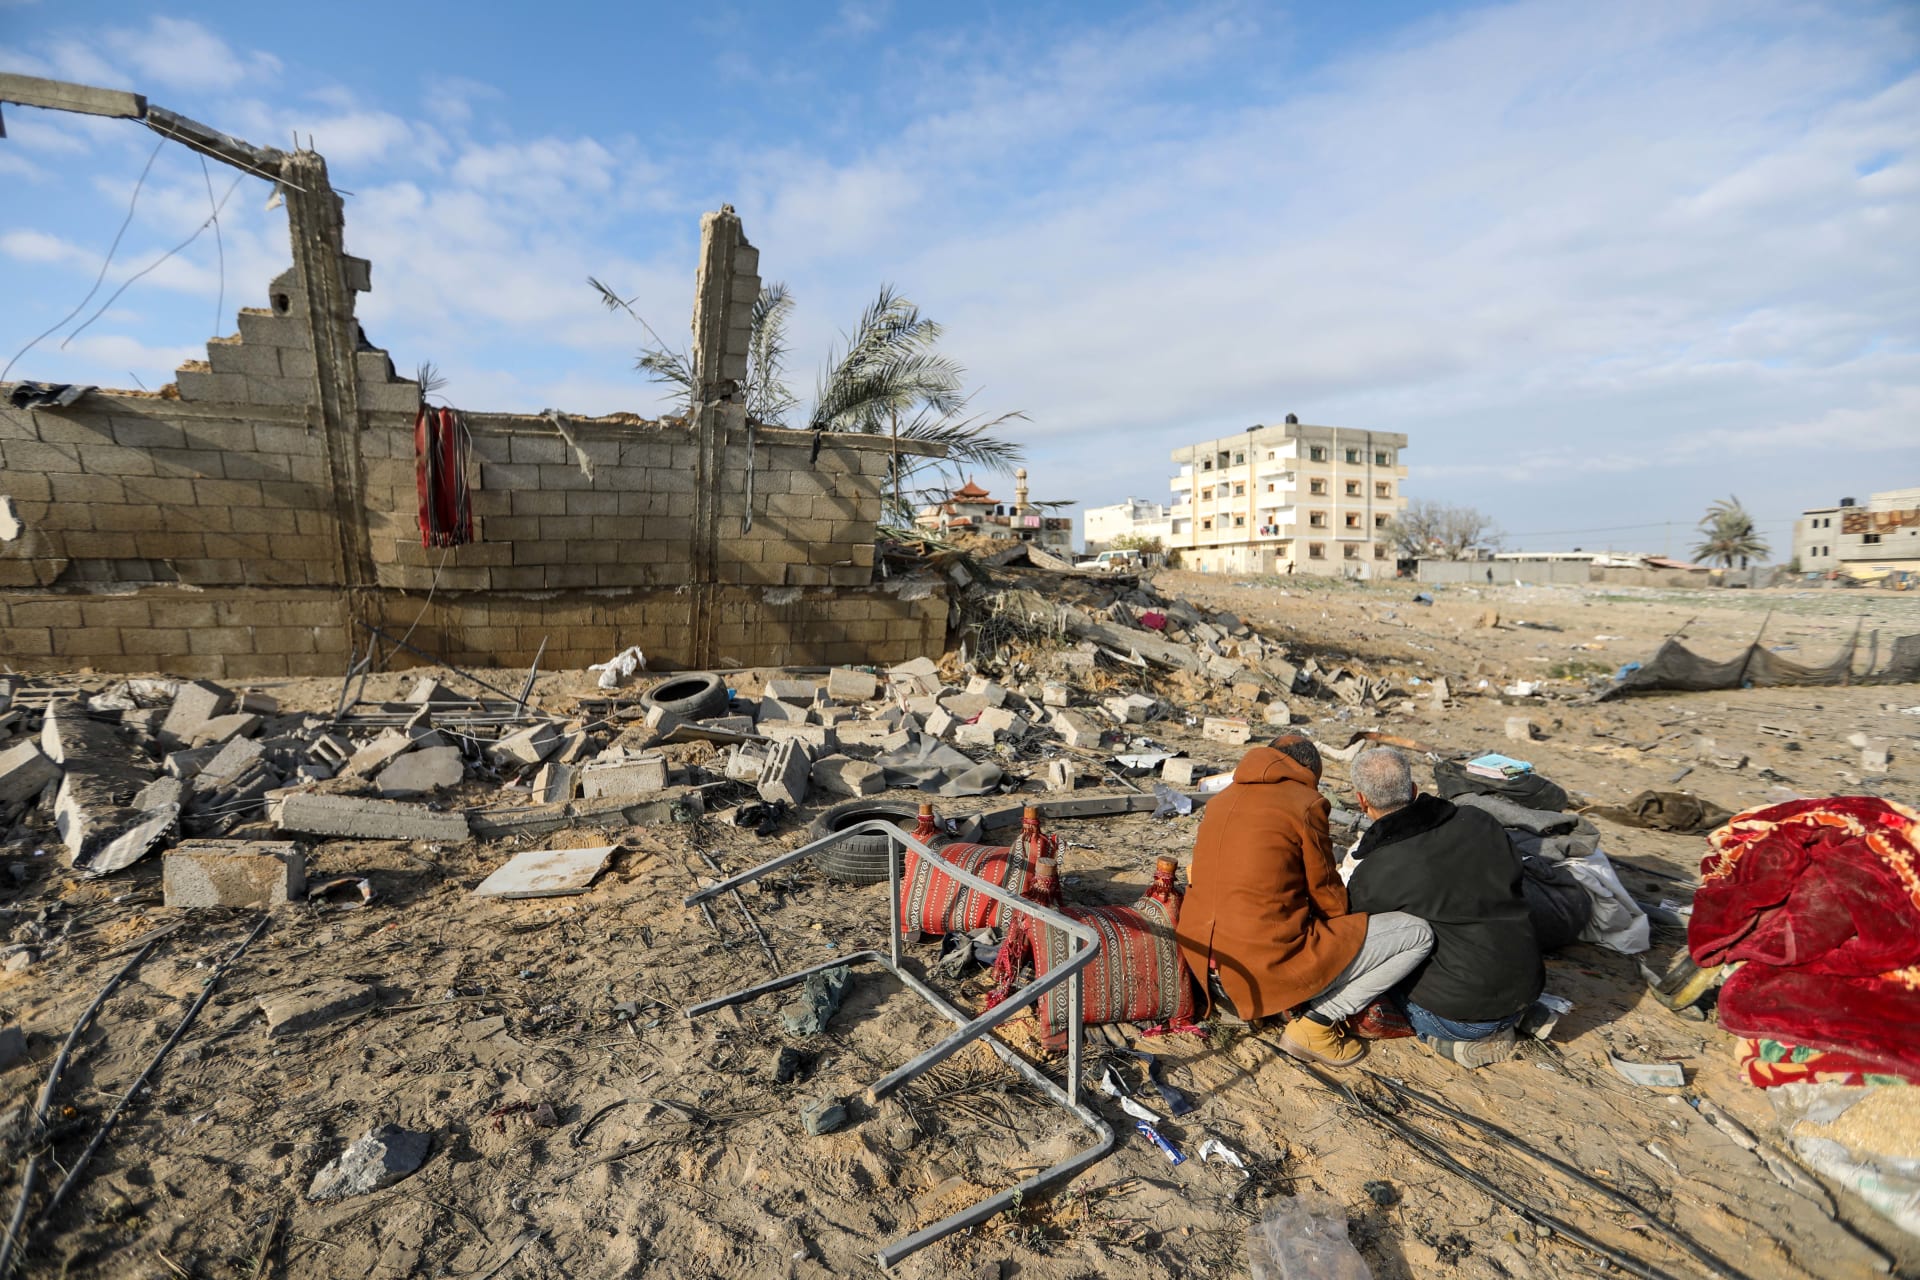 26 دولة في الاتحاد الأوروبي تدعو إلى "هدنة إنسانية فورية" في غزة